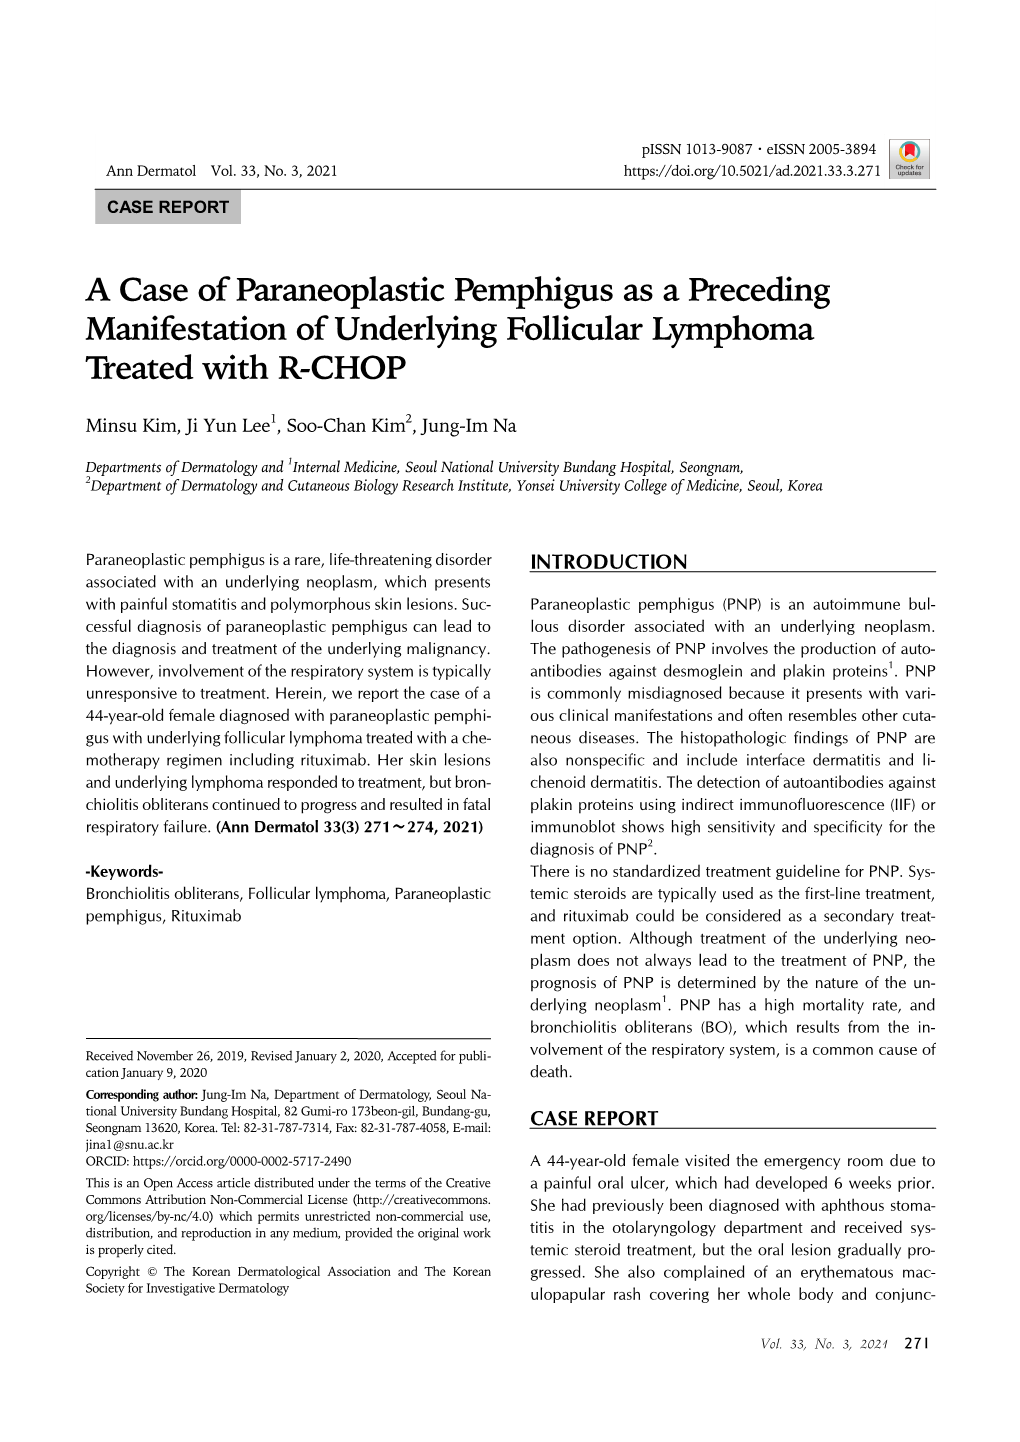 A Case of Paraneoplastic Pemphigus As a Preceding Manifestation of Underlying Follicular Lymphoma Treated with R-CHOP